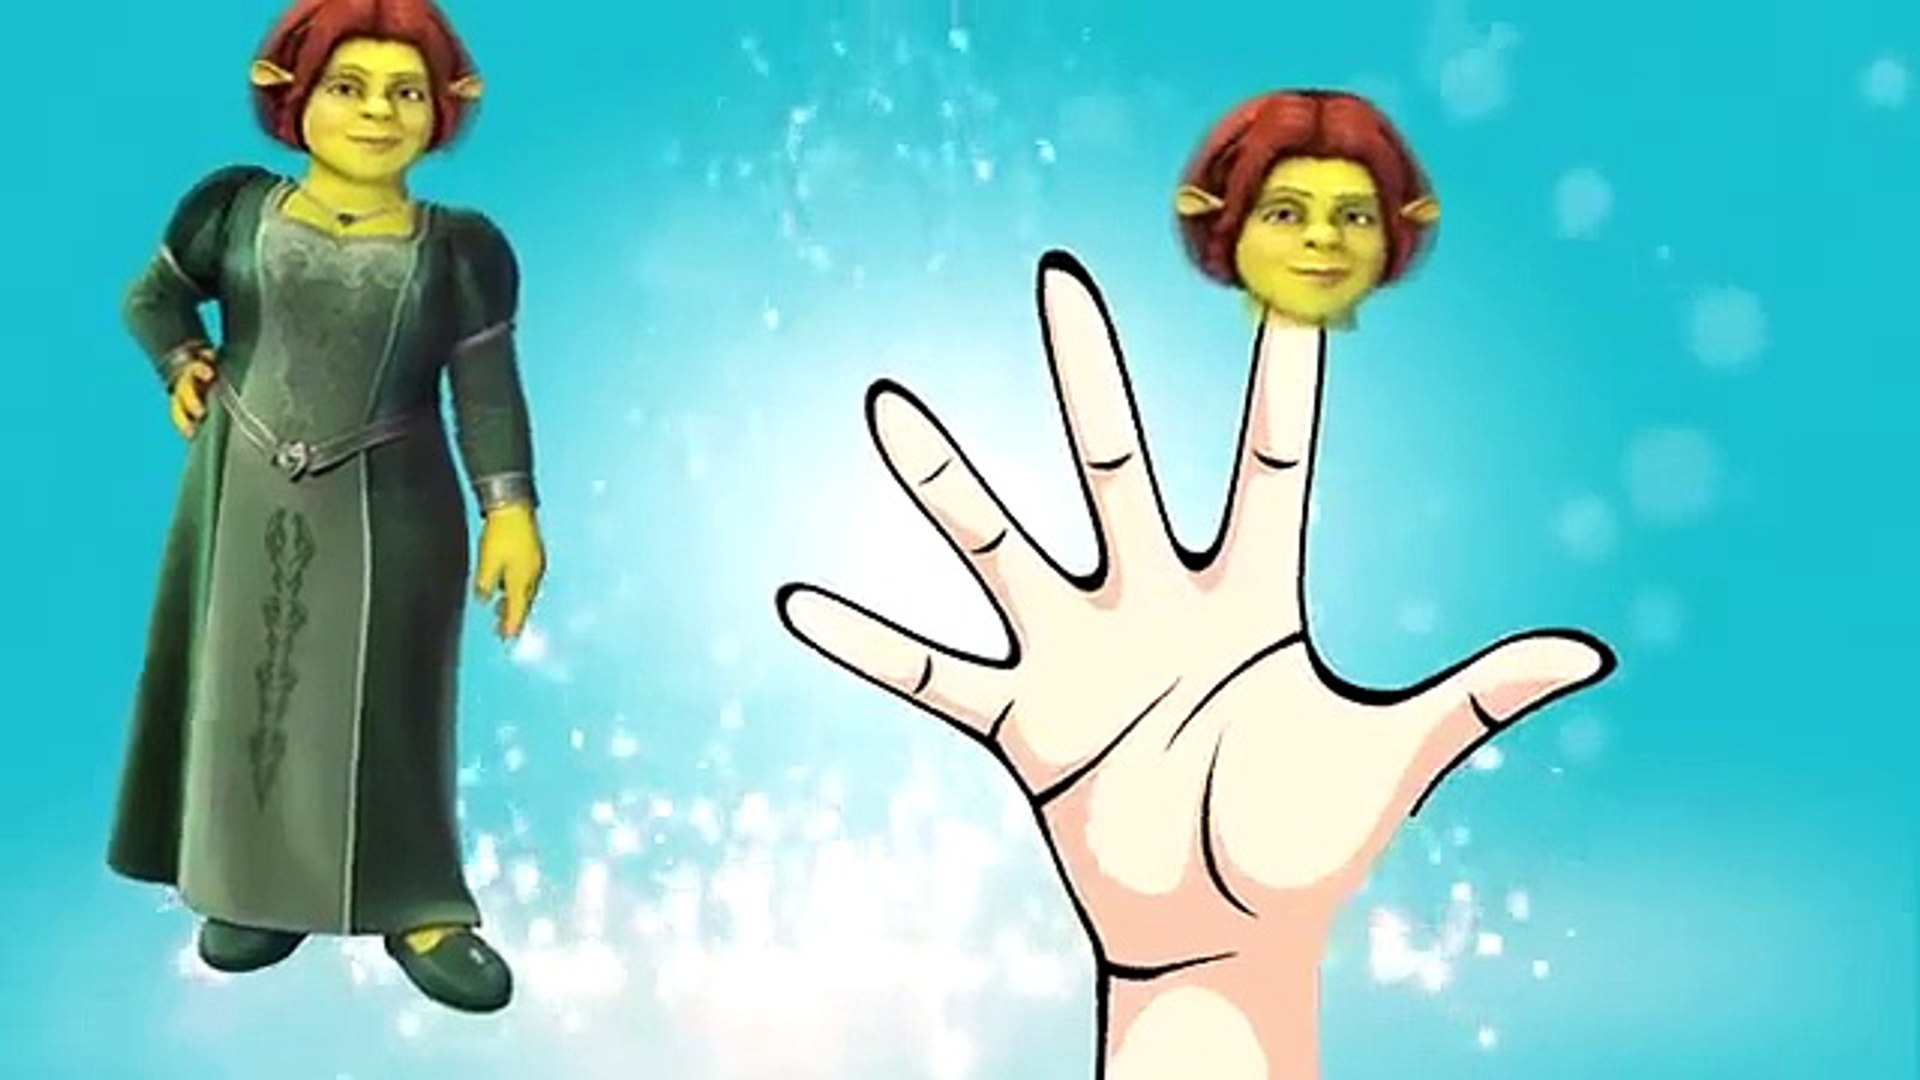 Shrek Finger Family Song | Finger Family Song For Children & English Childrens Songs